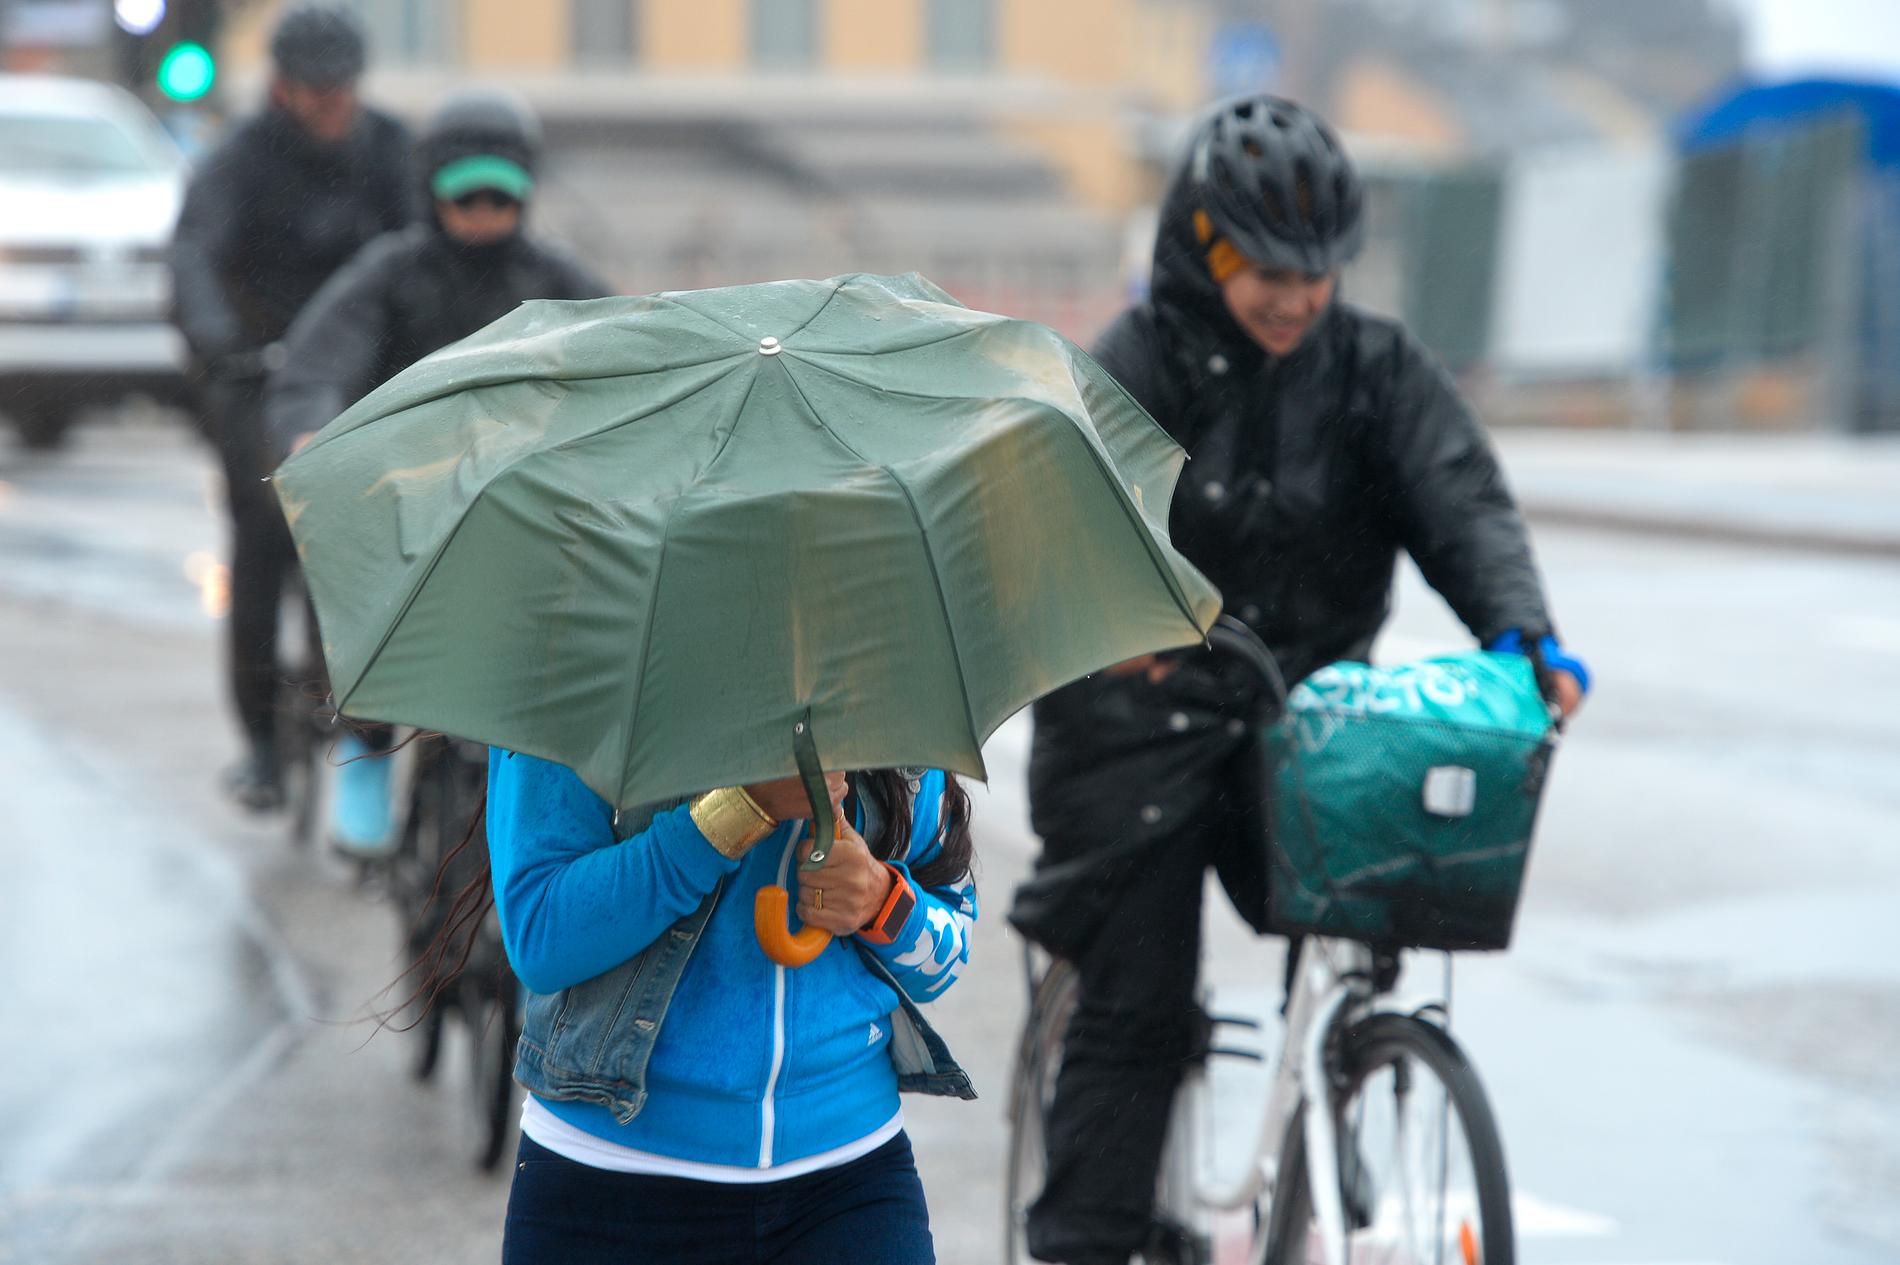 Regn och rusk väntar enligt SMHI kommande vecka. 